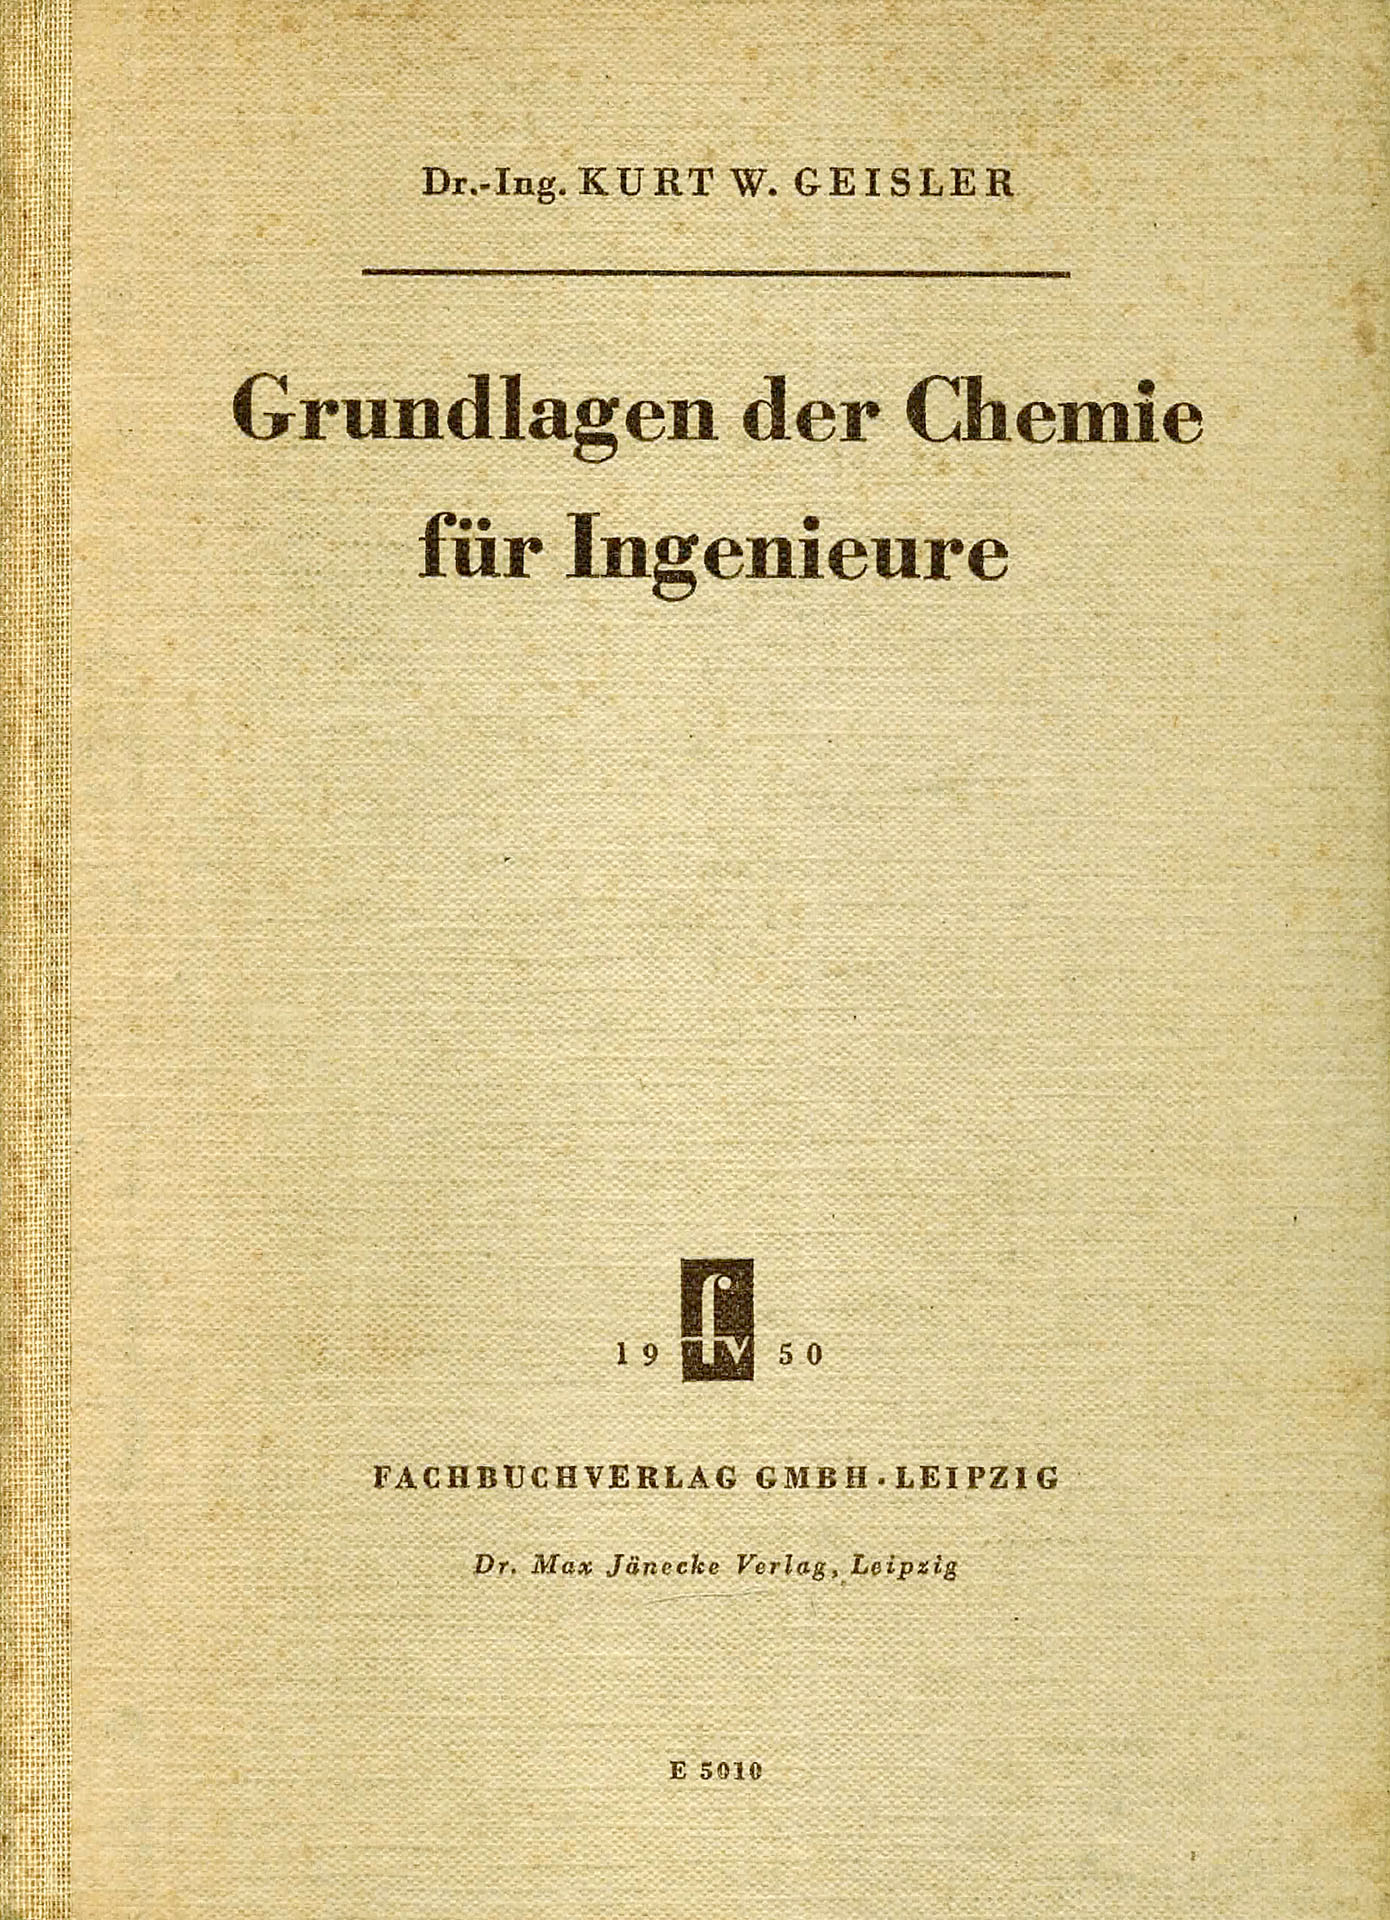 Grundlagen der Chemie fürt Ingenieure - Geisler, Kurt W.